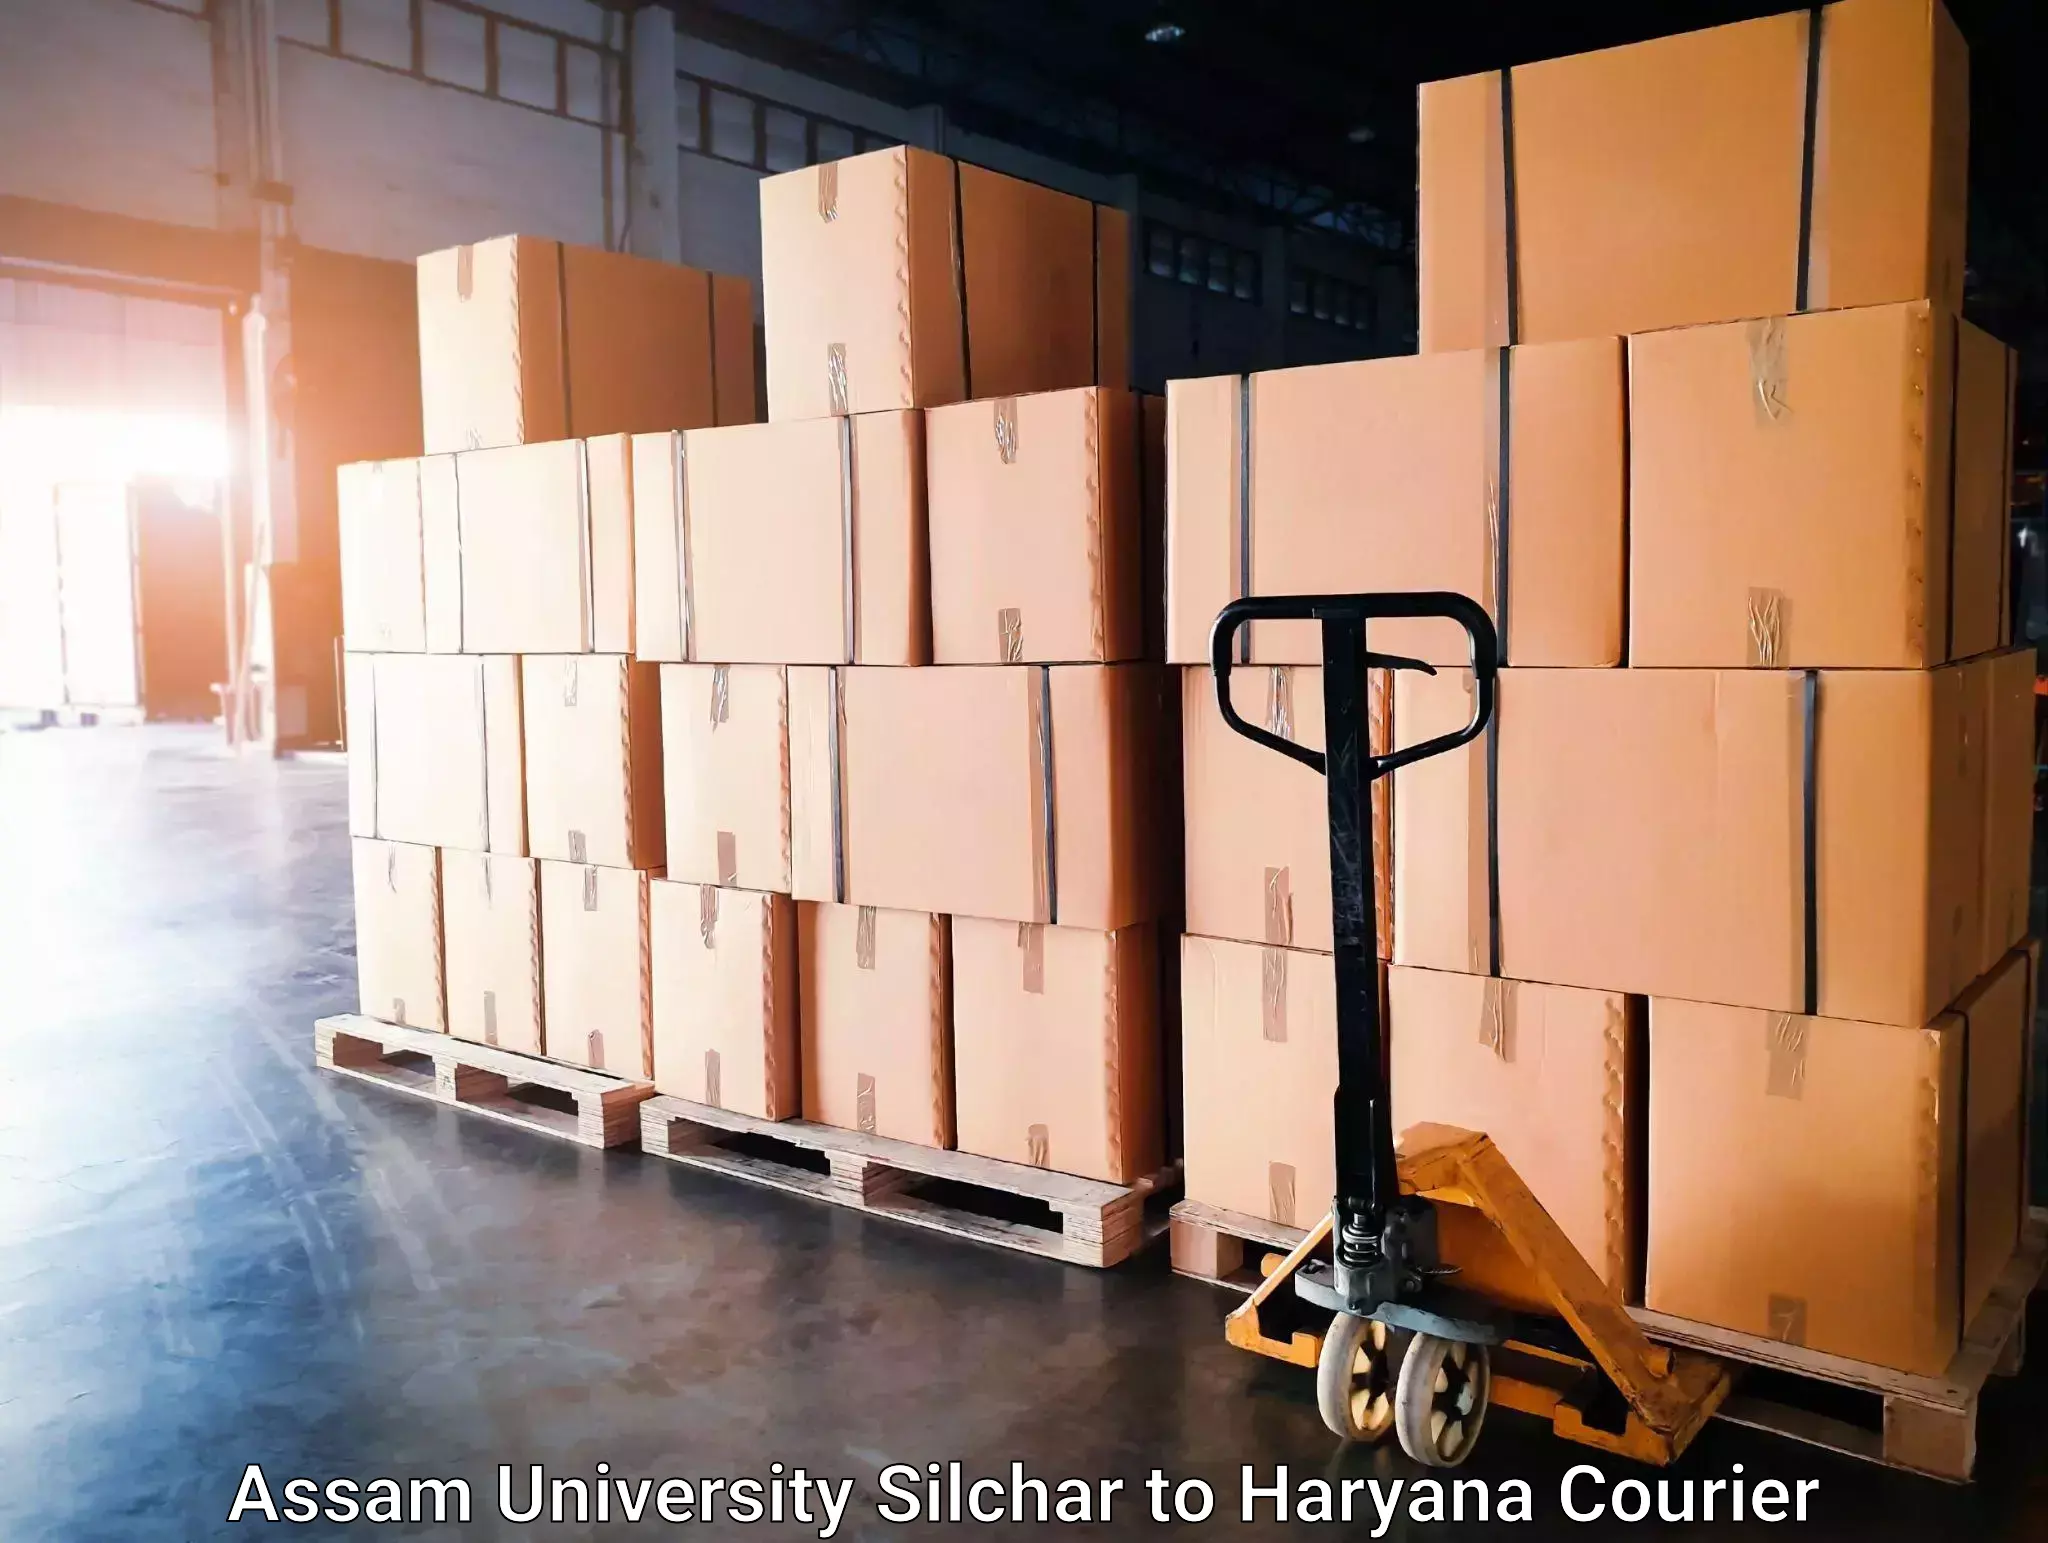 Business delivery service Assam University Silchar to Panchkula